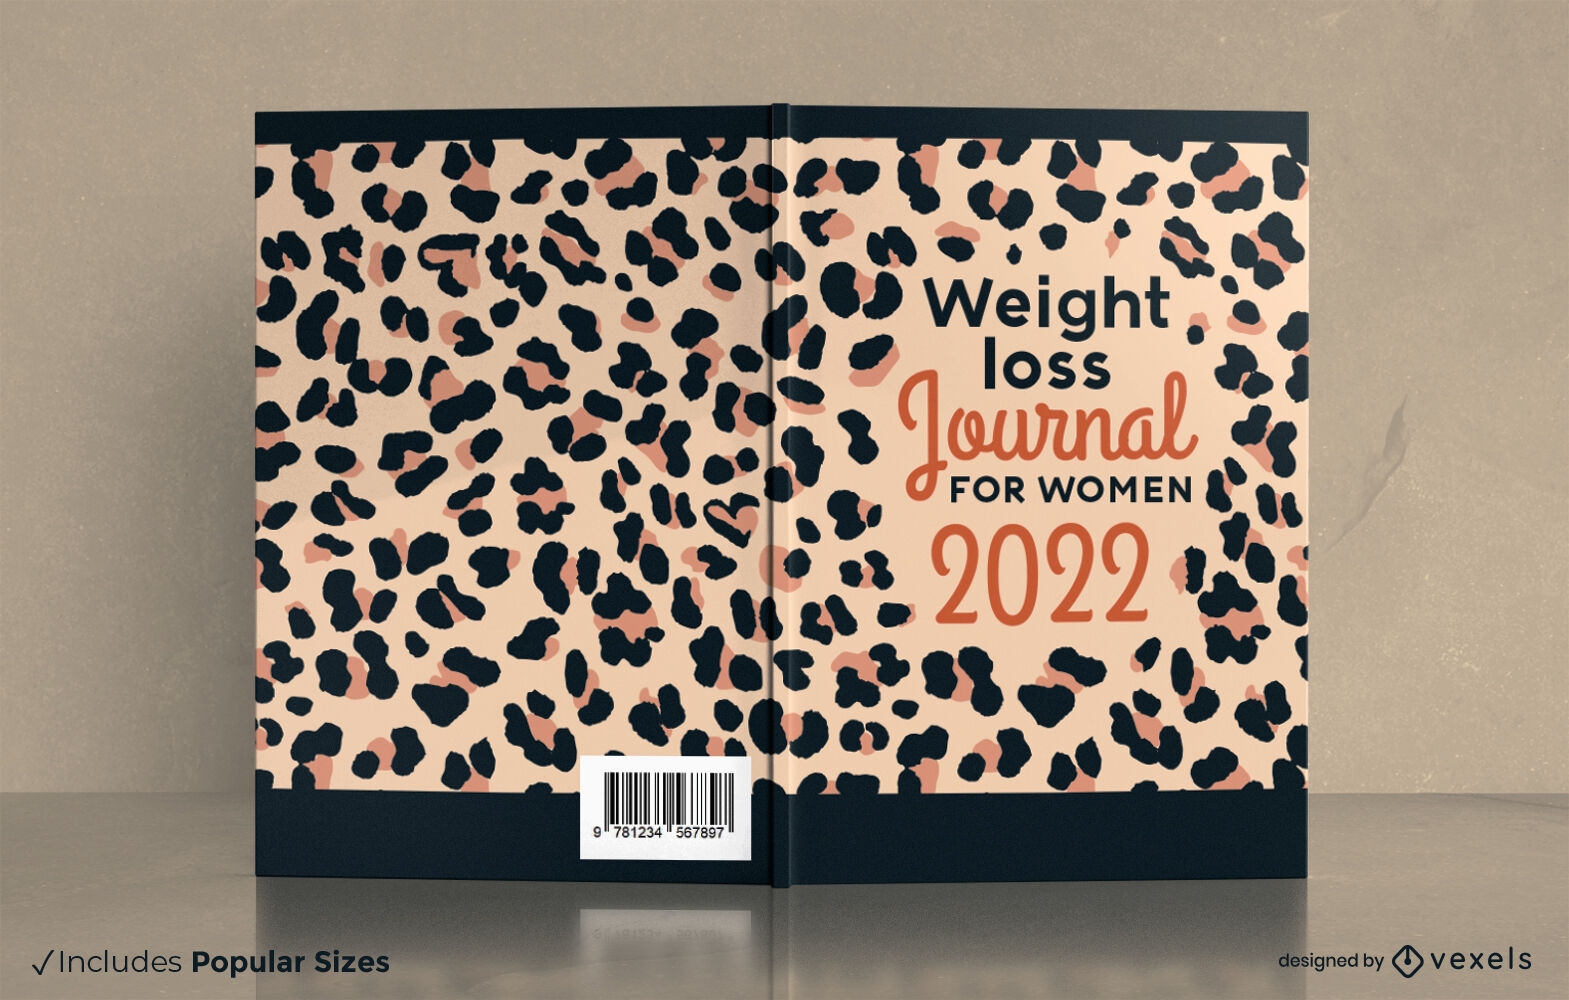 Buchcover-Design f?r Zeitschriften mit Tierdruck zur Gewichtsabnahme